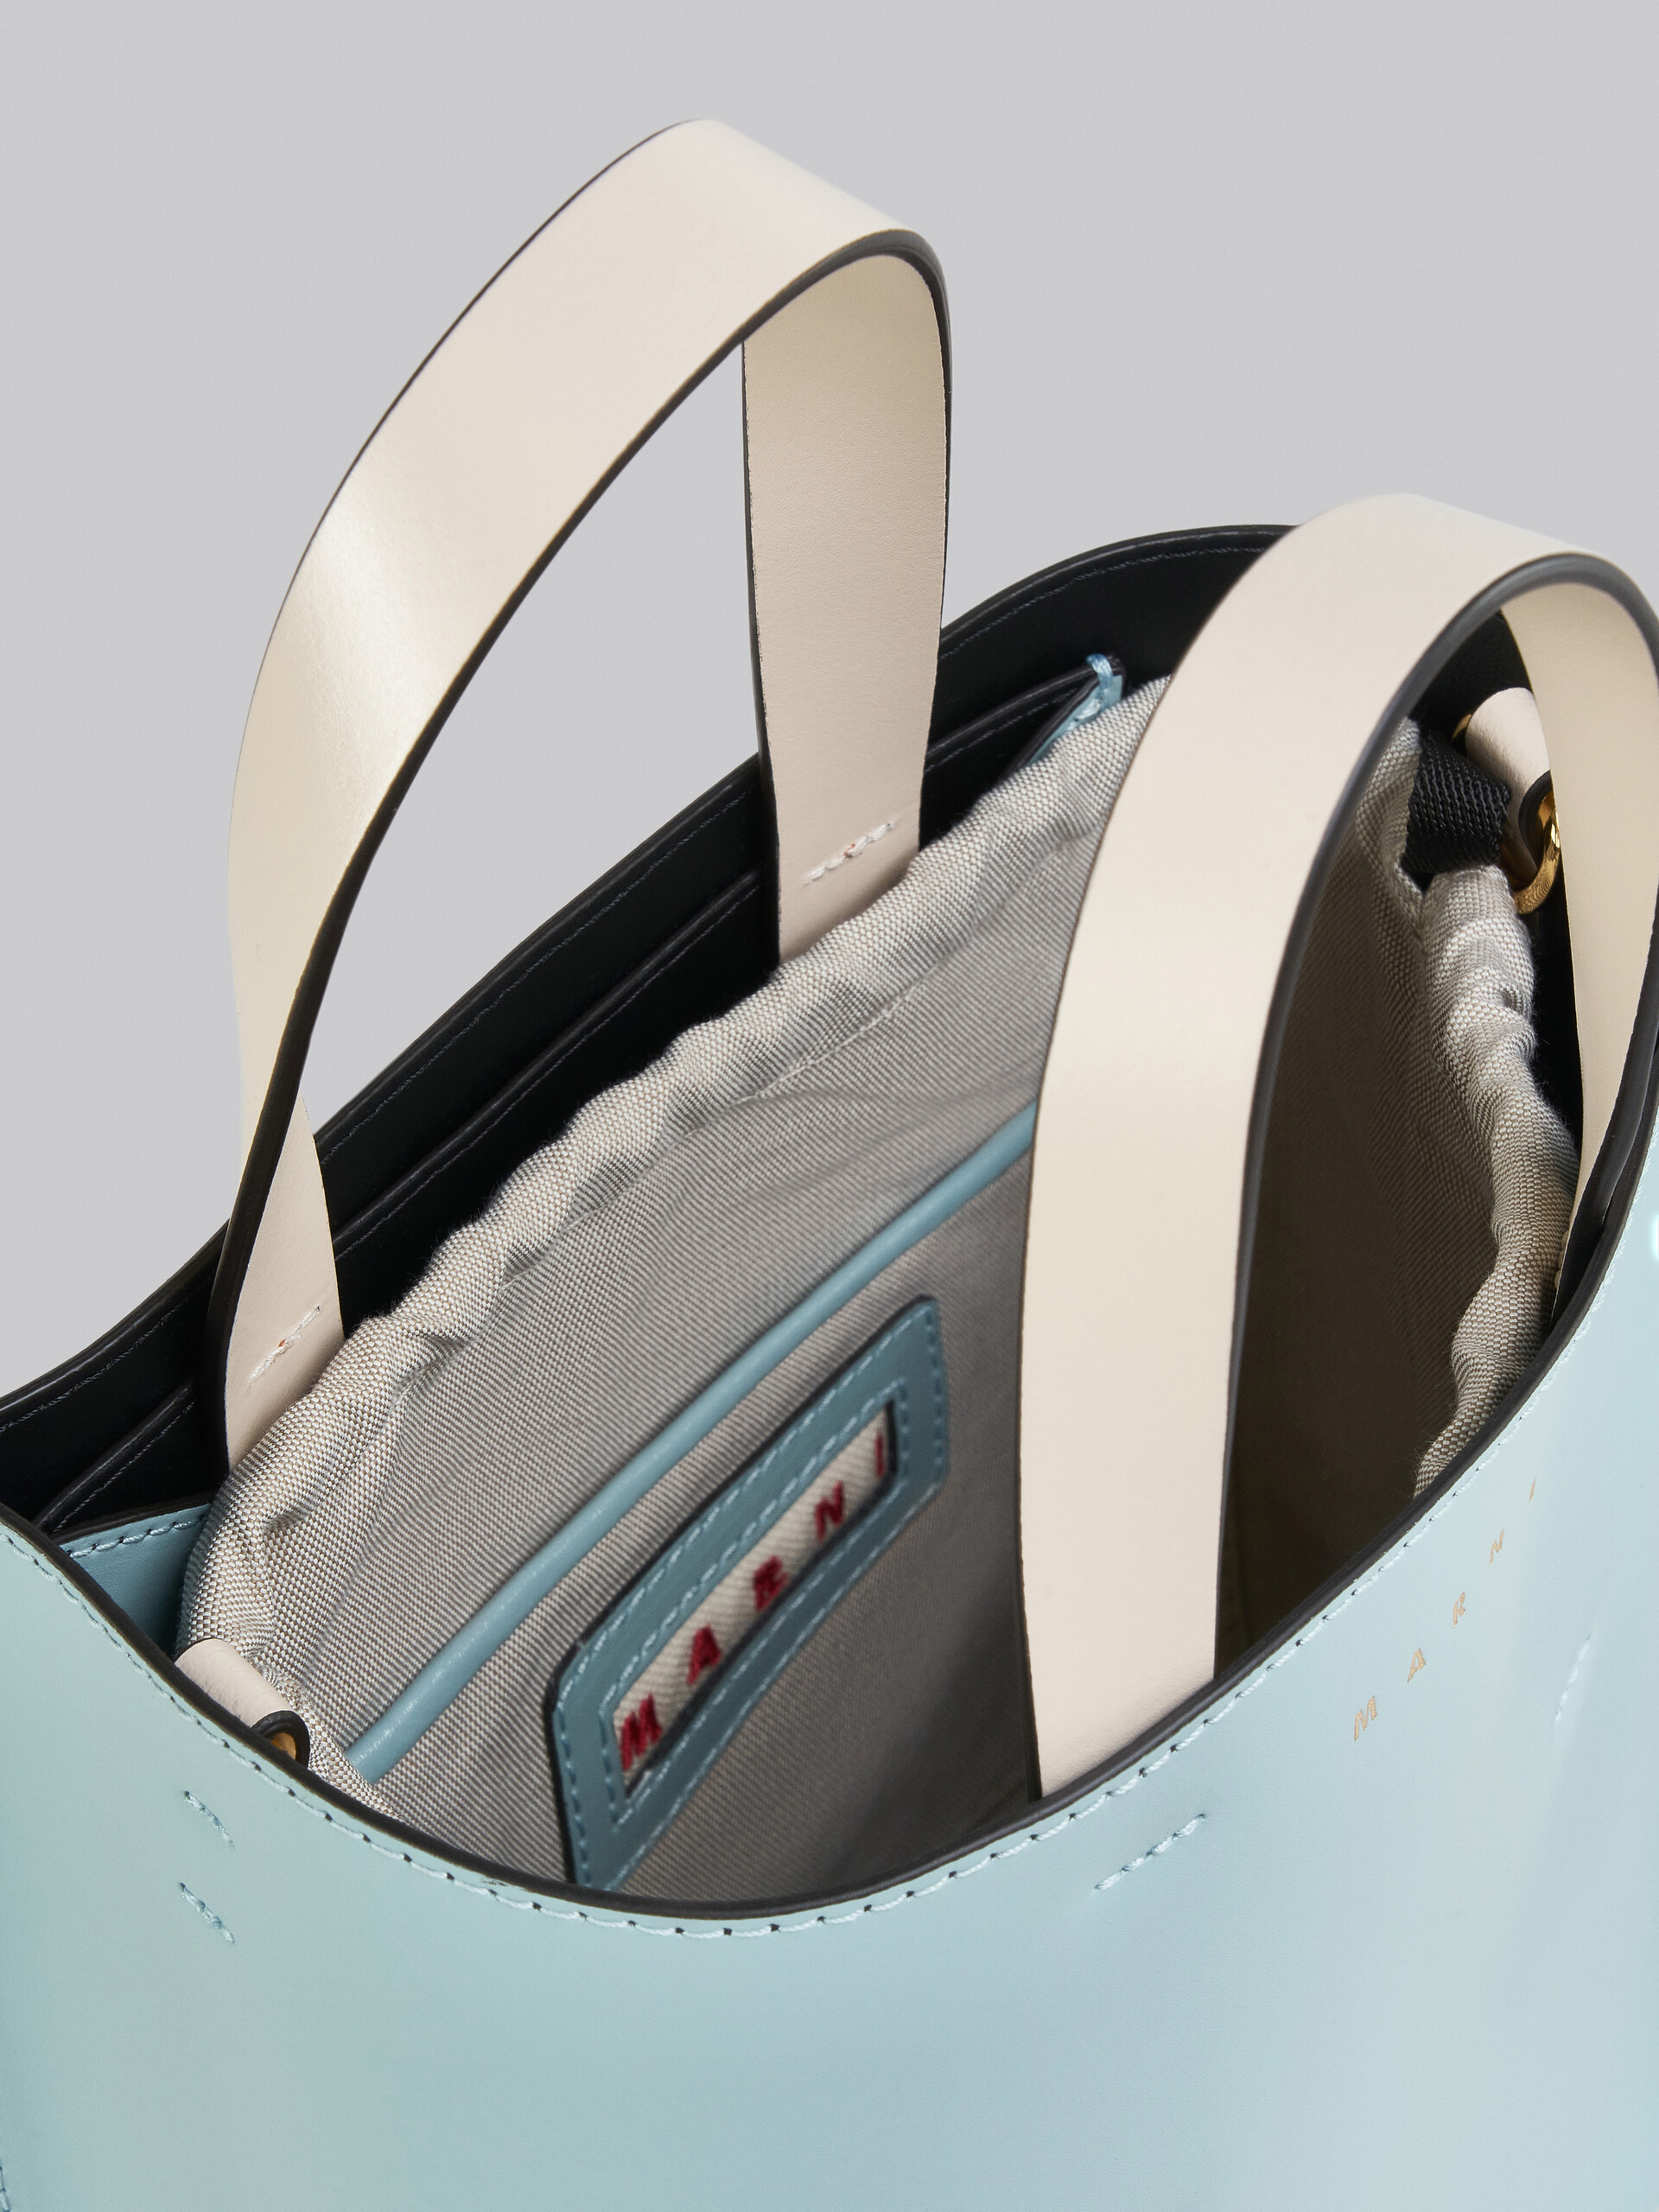 シャイニーカーフスキン MUSEO バッグ バイカラー ショルダーストラップ付き - ショッピングバッグ - Image 4